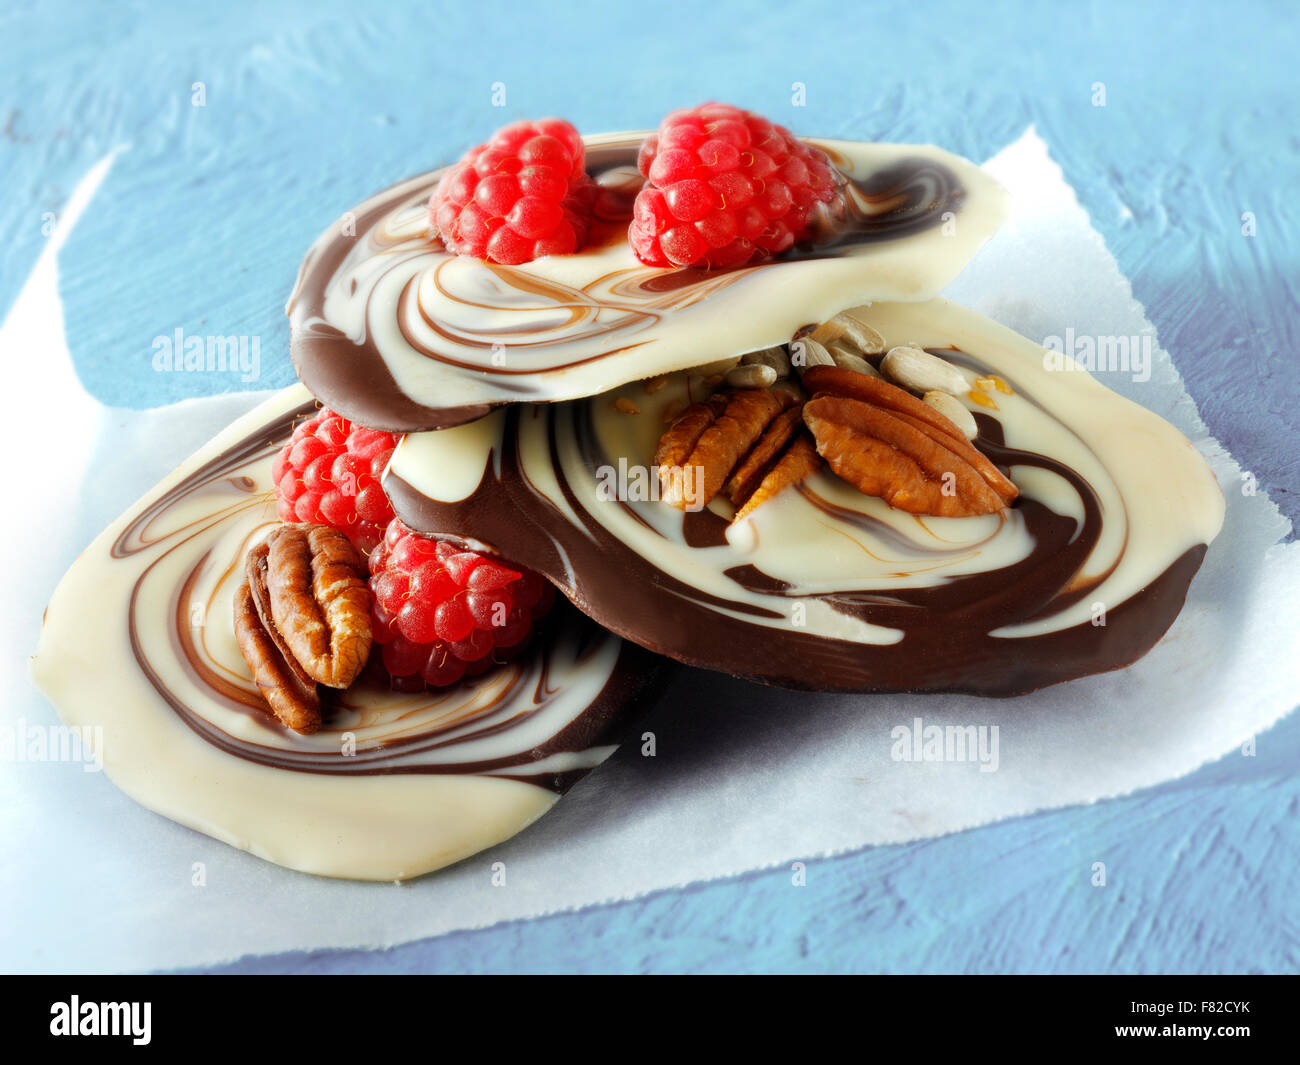 La leche y el chocolate blanco derretido remolinos receta con fruta y nueces Foto de stock